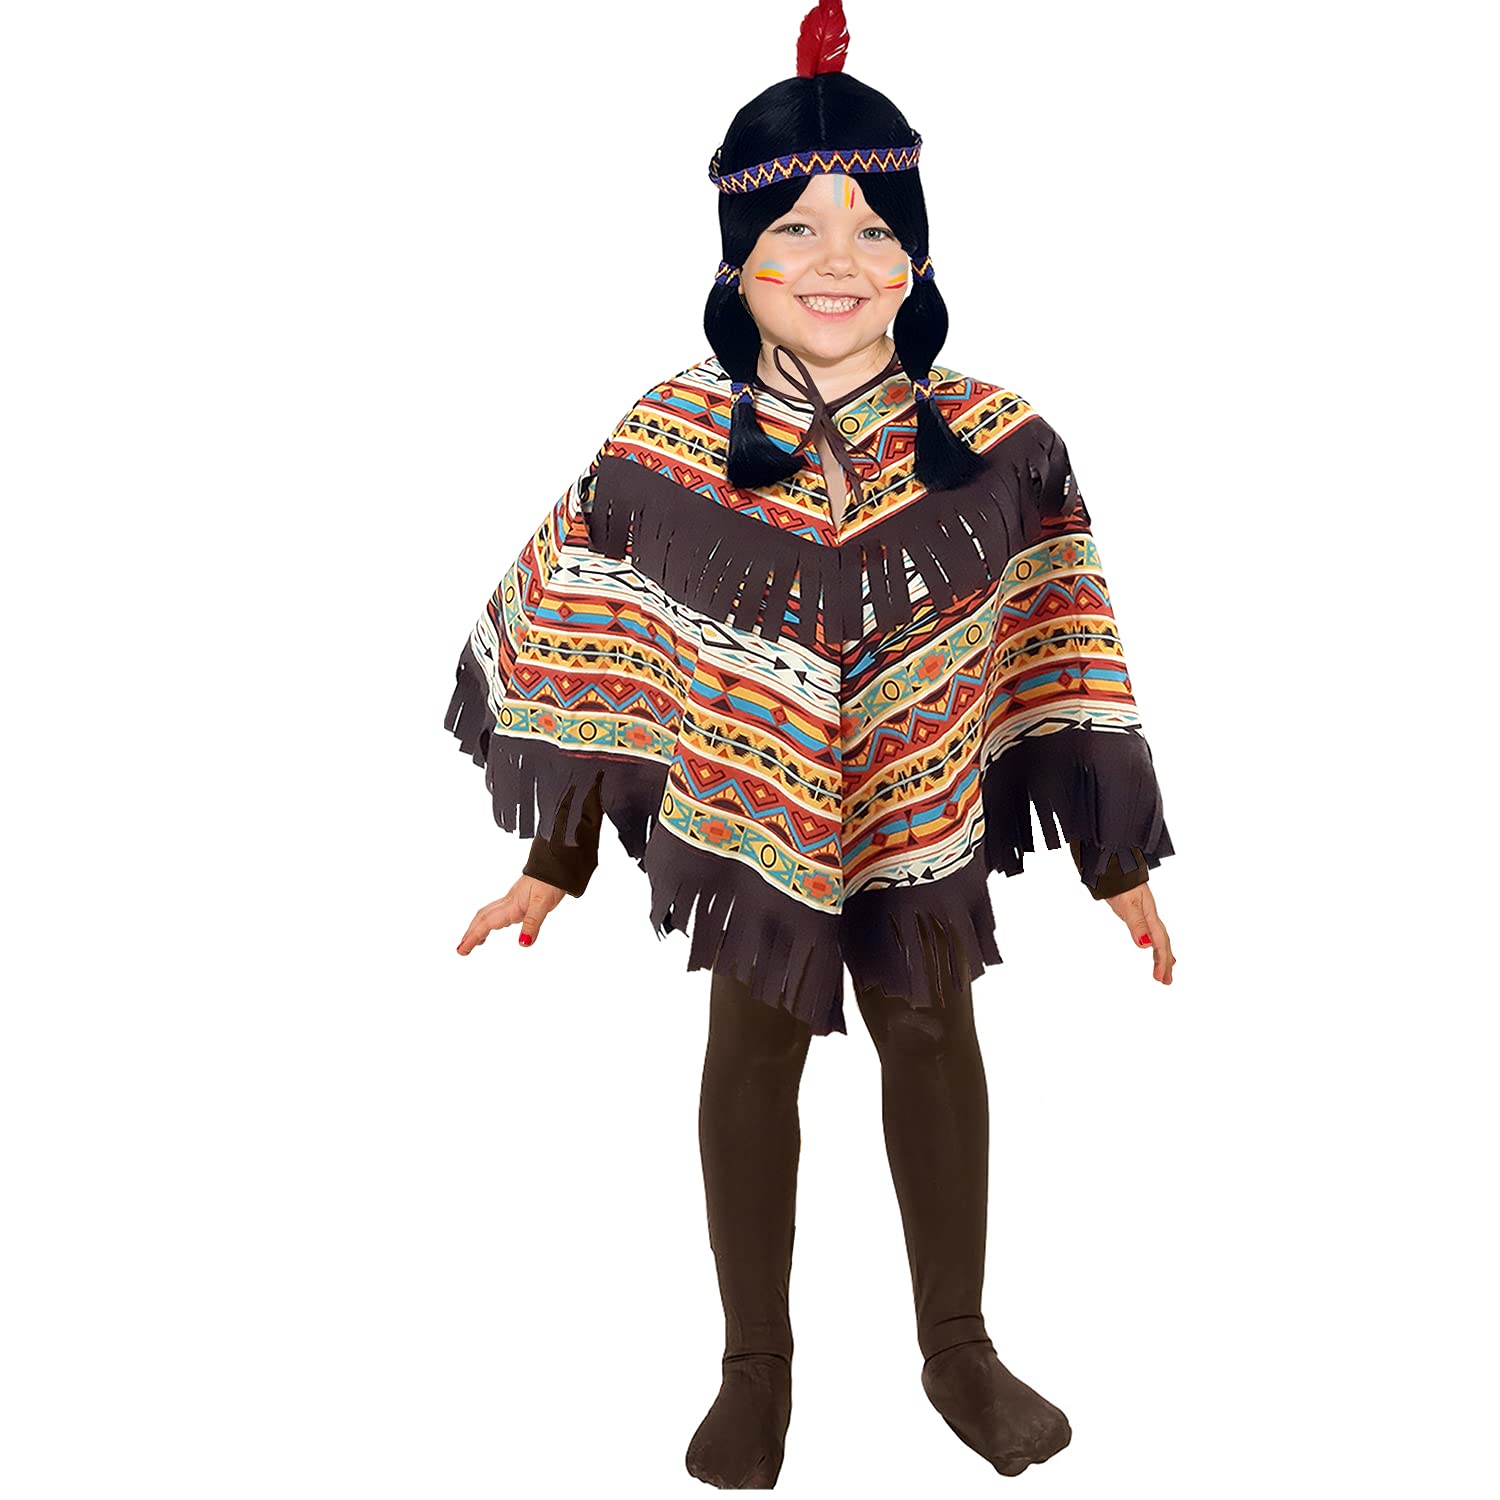 Krause & Sohn Indianer Kostüm für Kinder Gr. 104-116 amerikanischer Ureinwohner Poncho gemustert Fasching